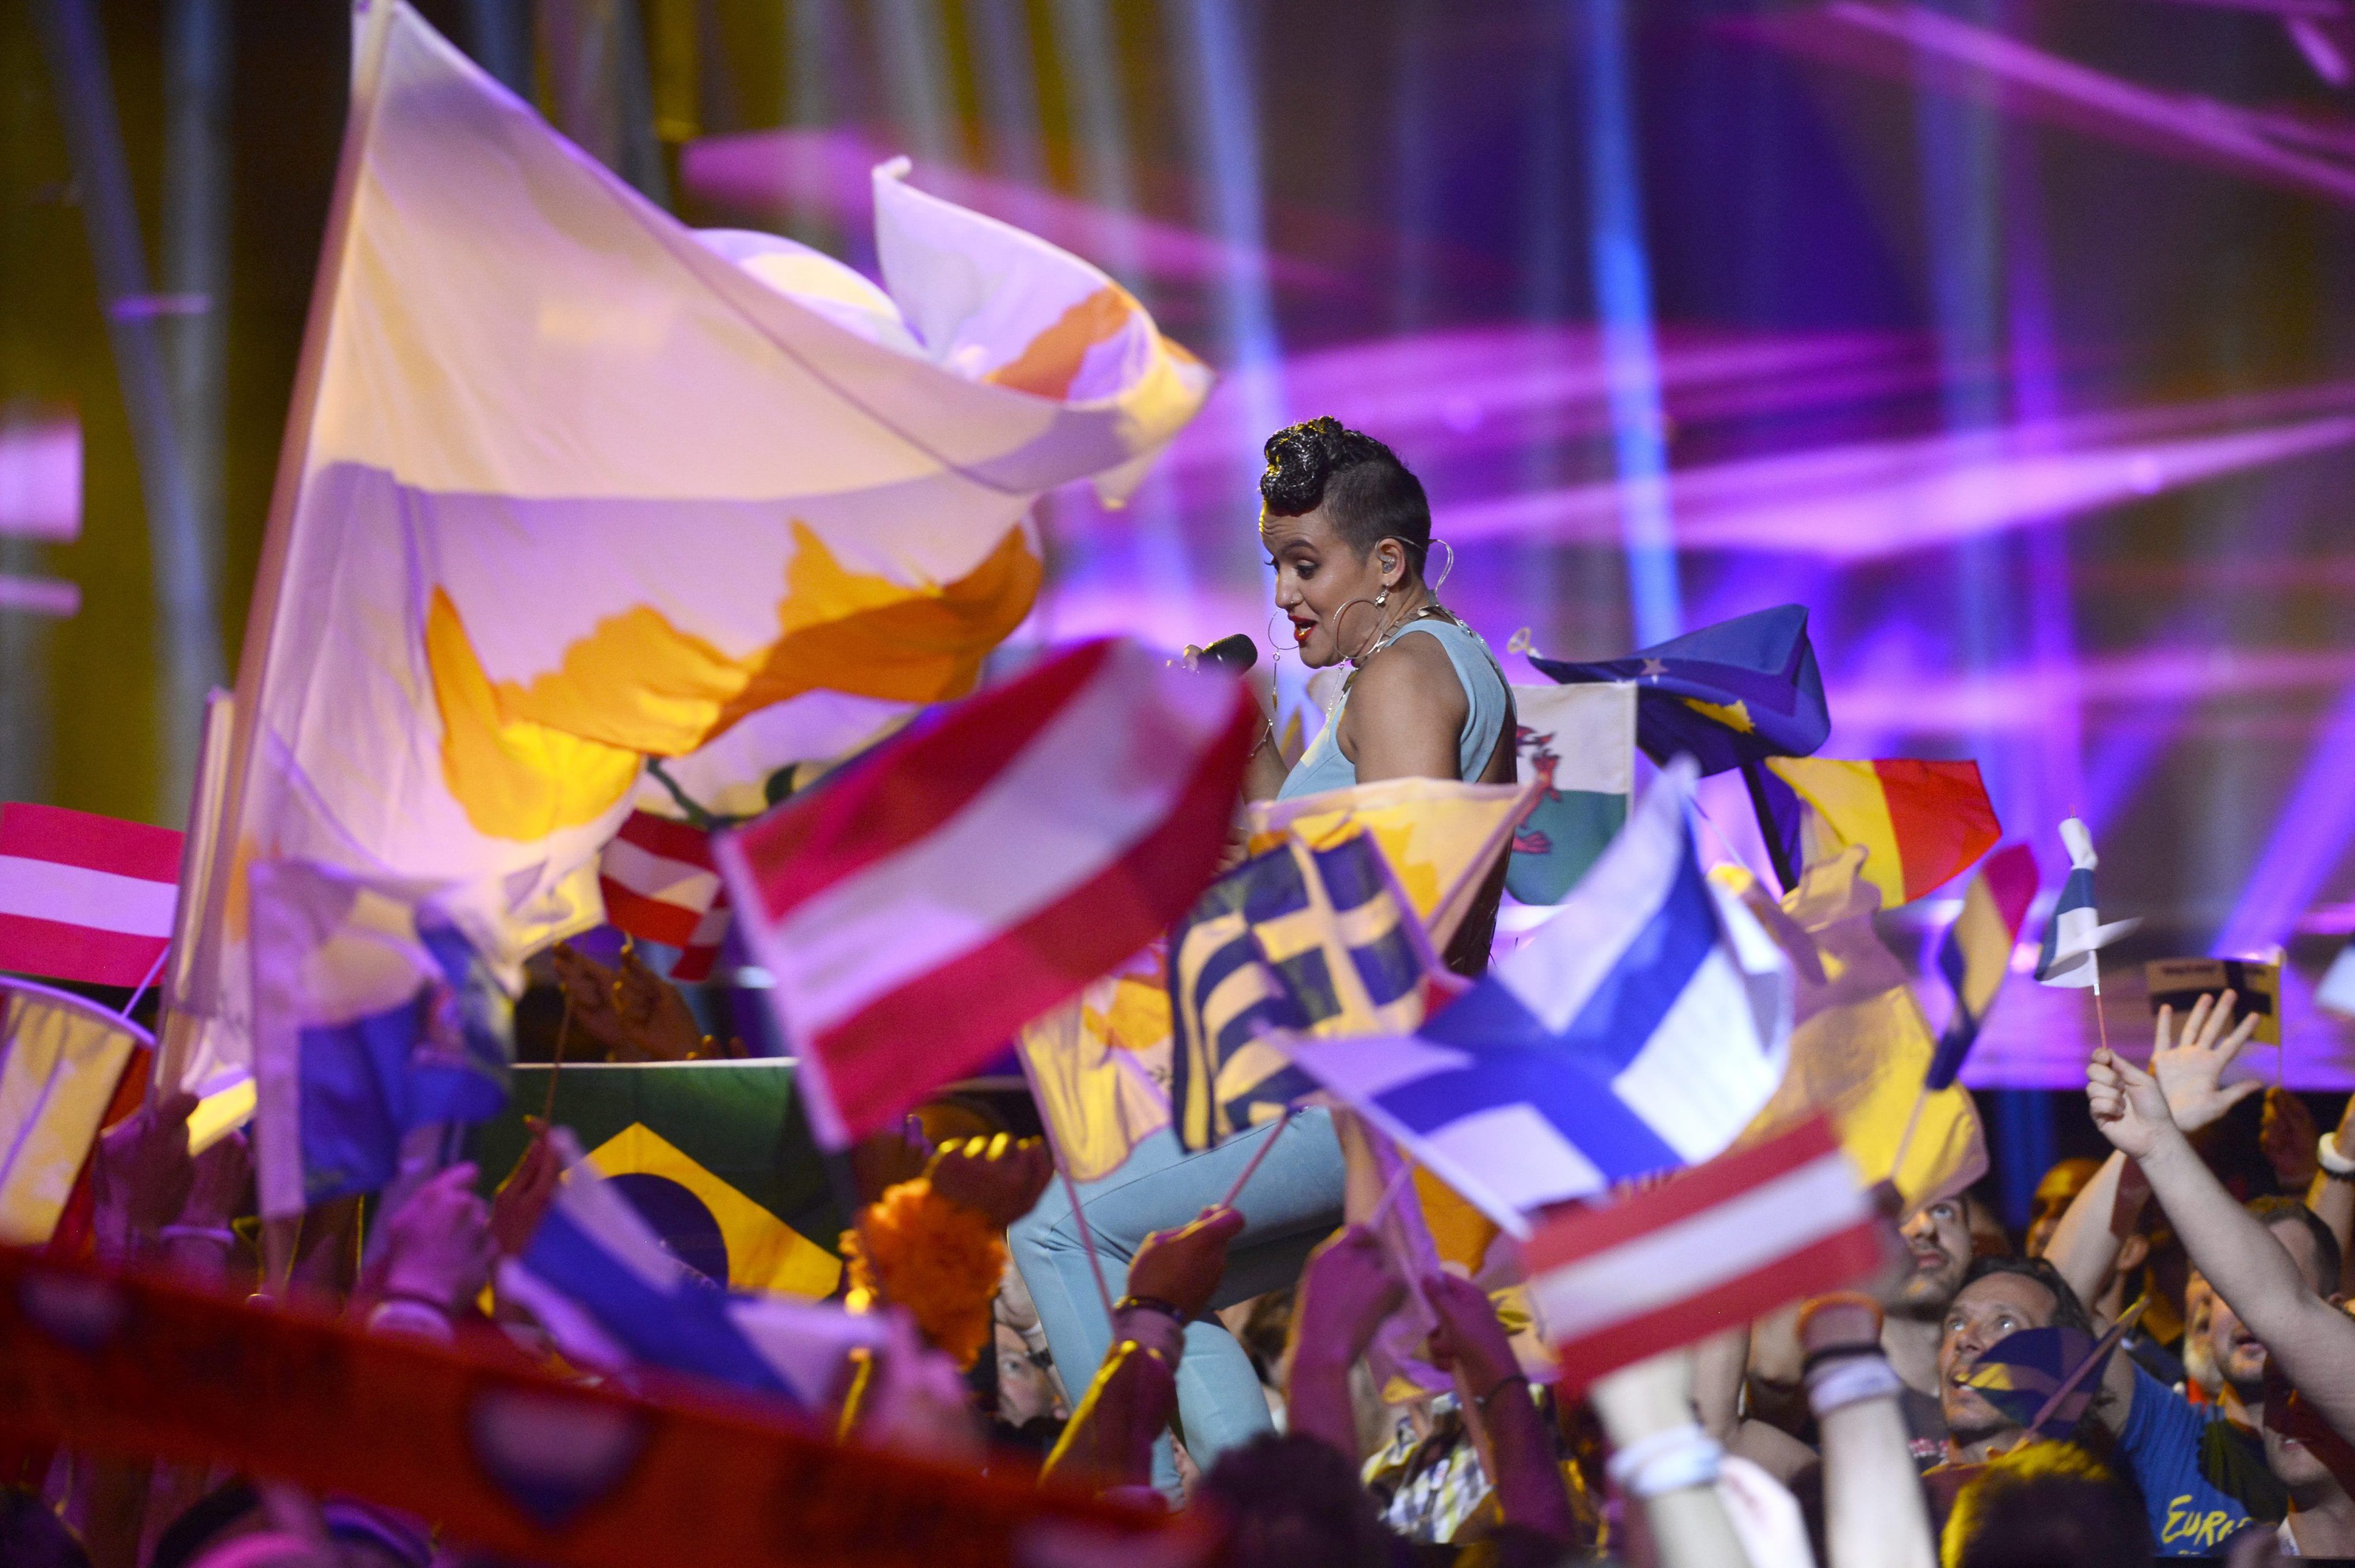 Les banderes es mengen Eurovisió